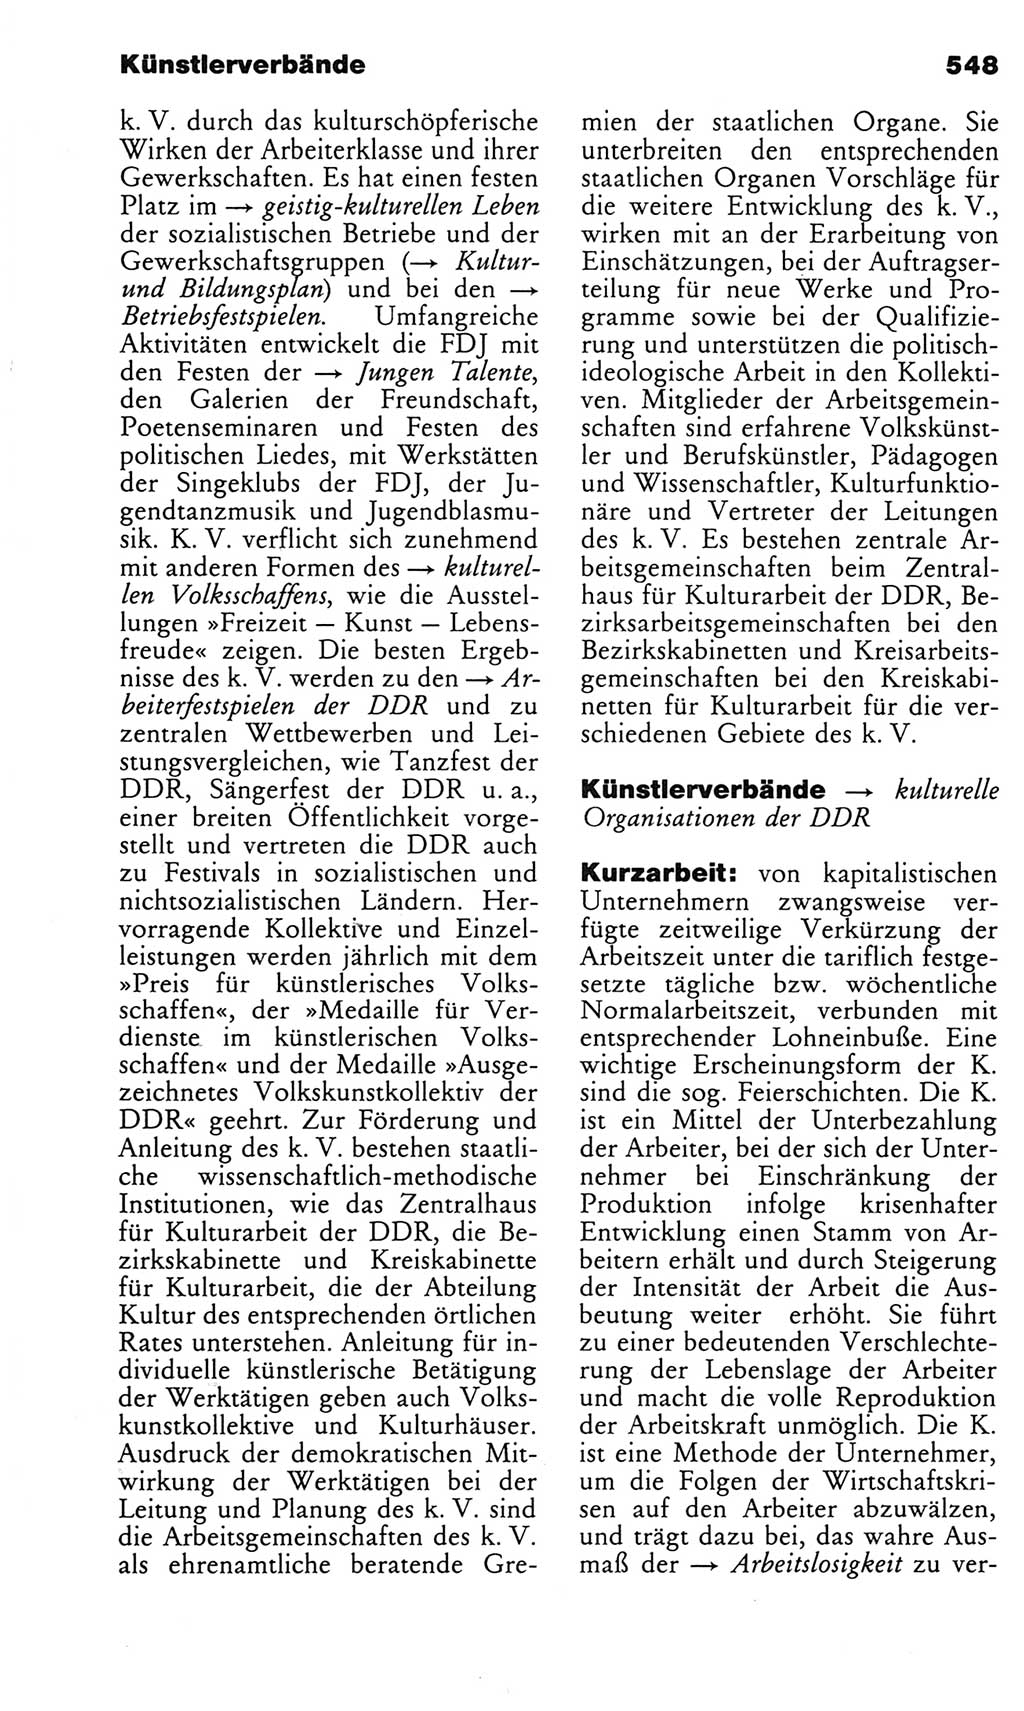 Kleines politisches Wörterbuch [Deutsche Demokratische Republik (DDR)] 1983, Seite 548 (Kl. pol. Wb. DDR 1983, S. 548)